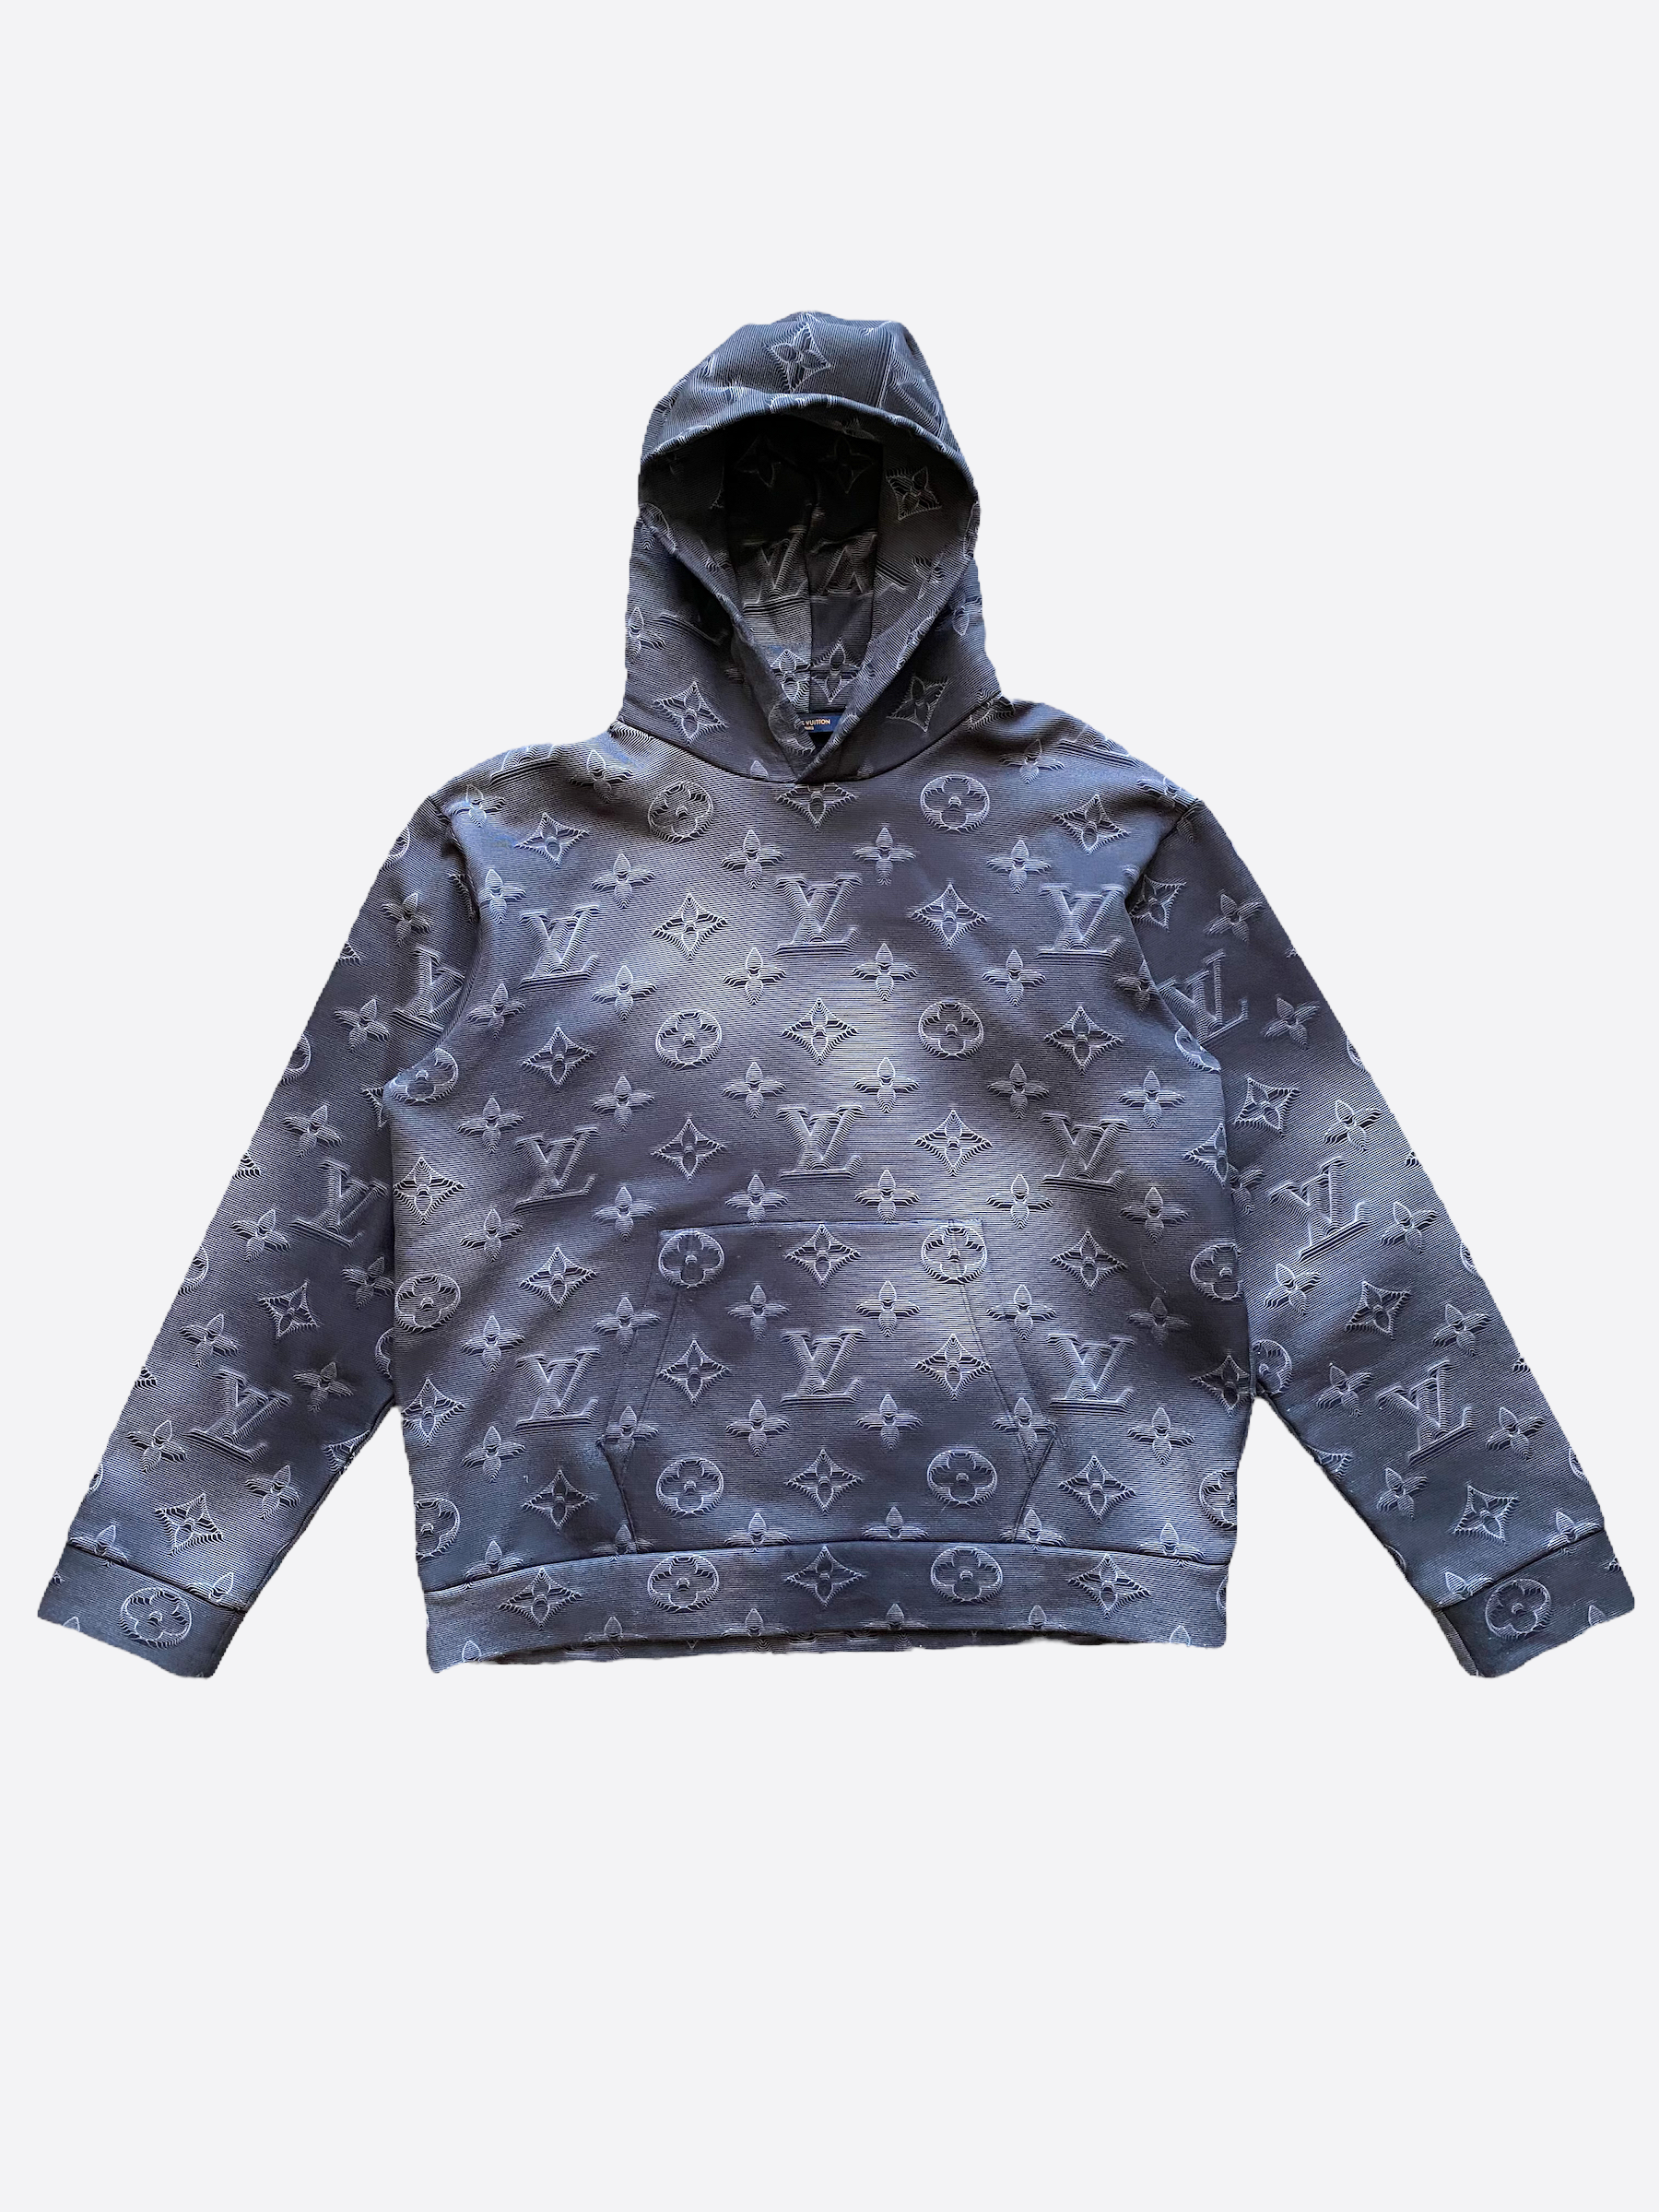 Louis Vuitton Blue Hoodies & Sweatshirts for Men for Sale